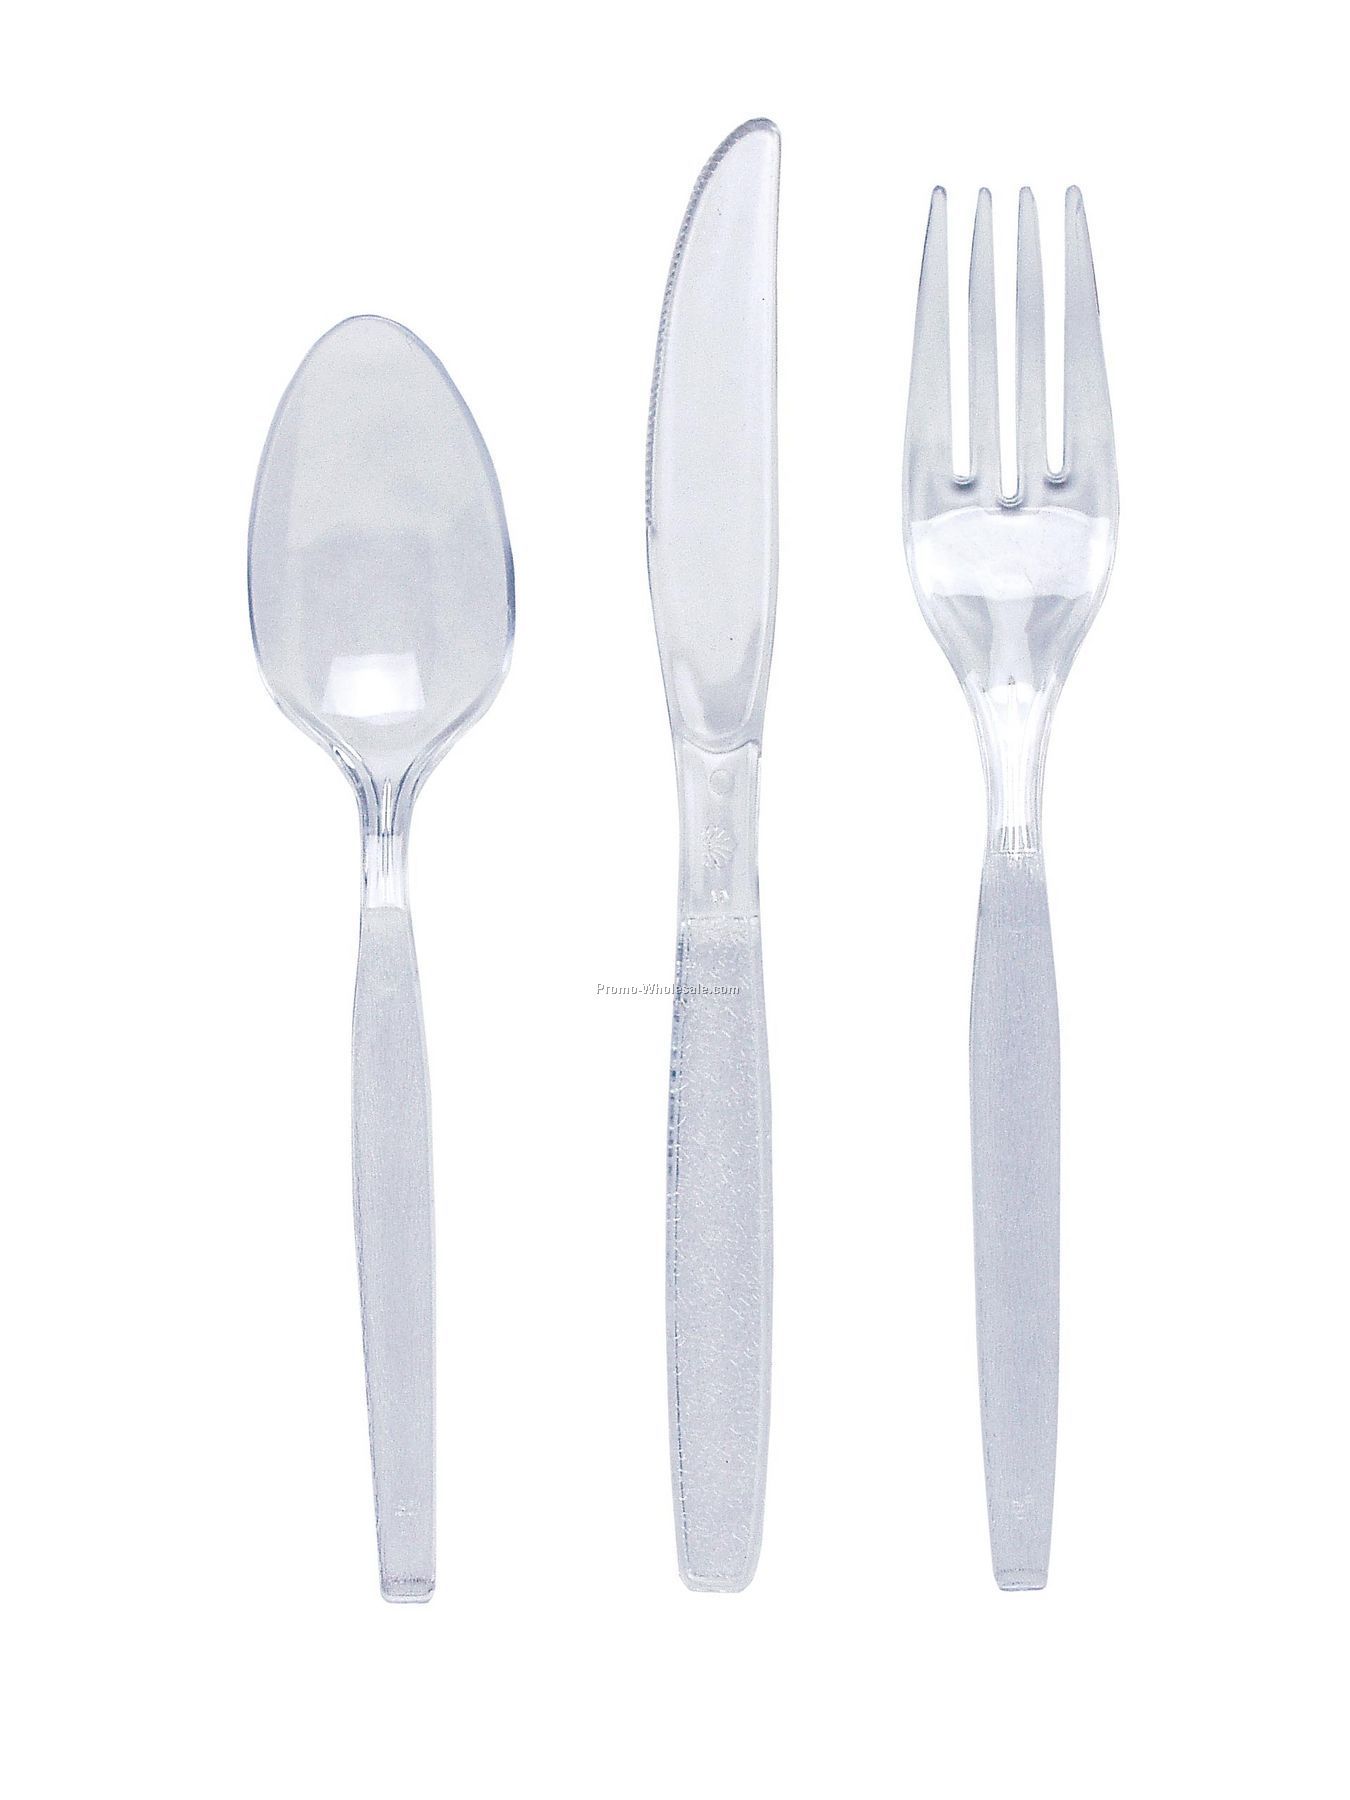 Ivory White Colorware Plastic Spoon